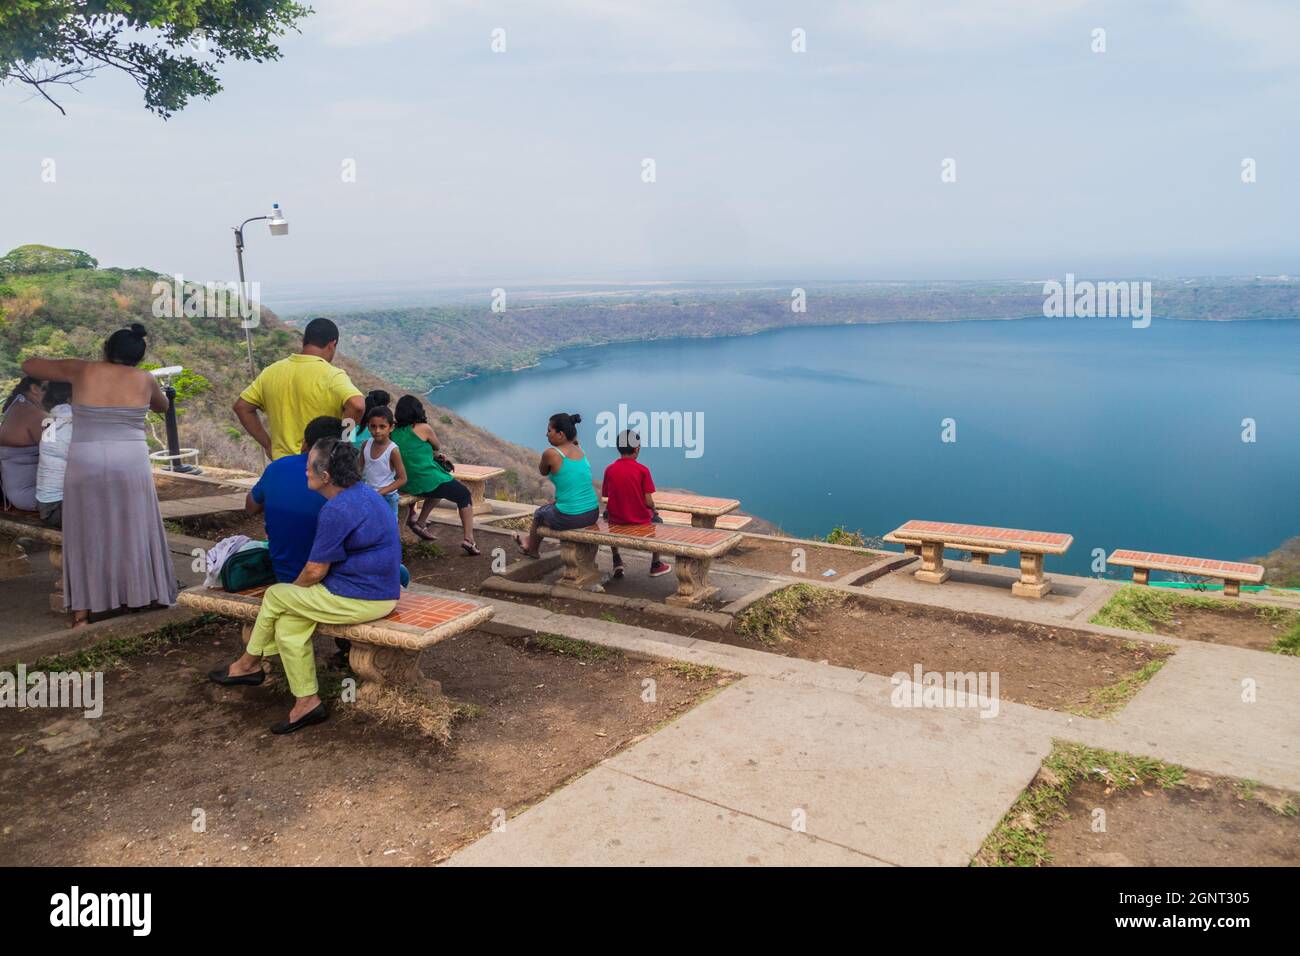 CATARINA, NICARAGUA - 29 APRILE 2016: Persone in un punto panoramico sul lago Laguna de Apoyo, Nicaragua Foto Stock